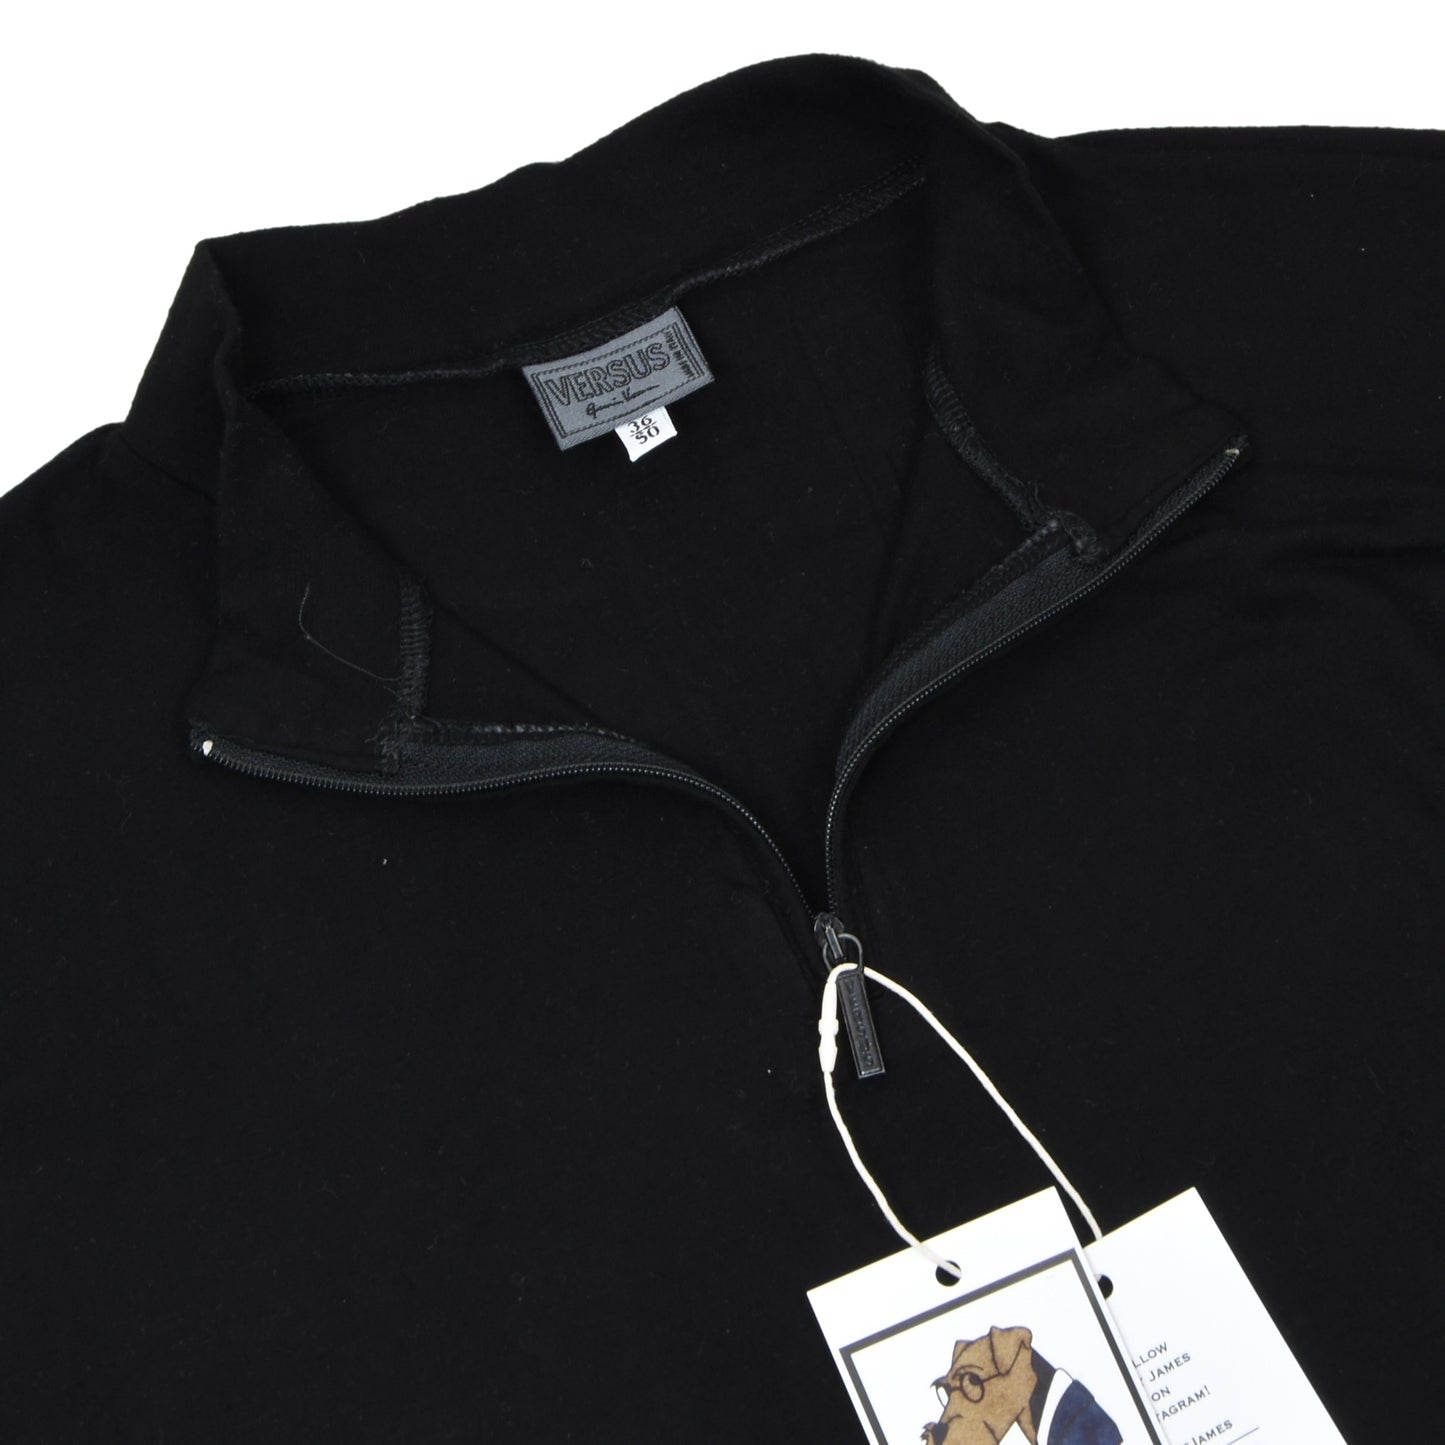 Versus Gianni Versace 1/4 Zip Pullover Size 50 - Black